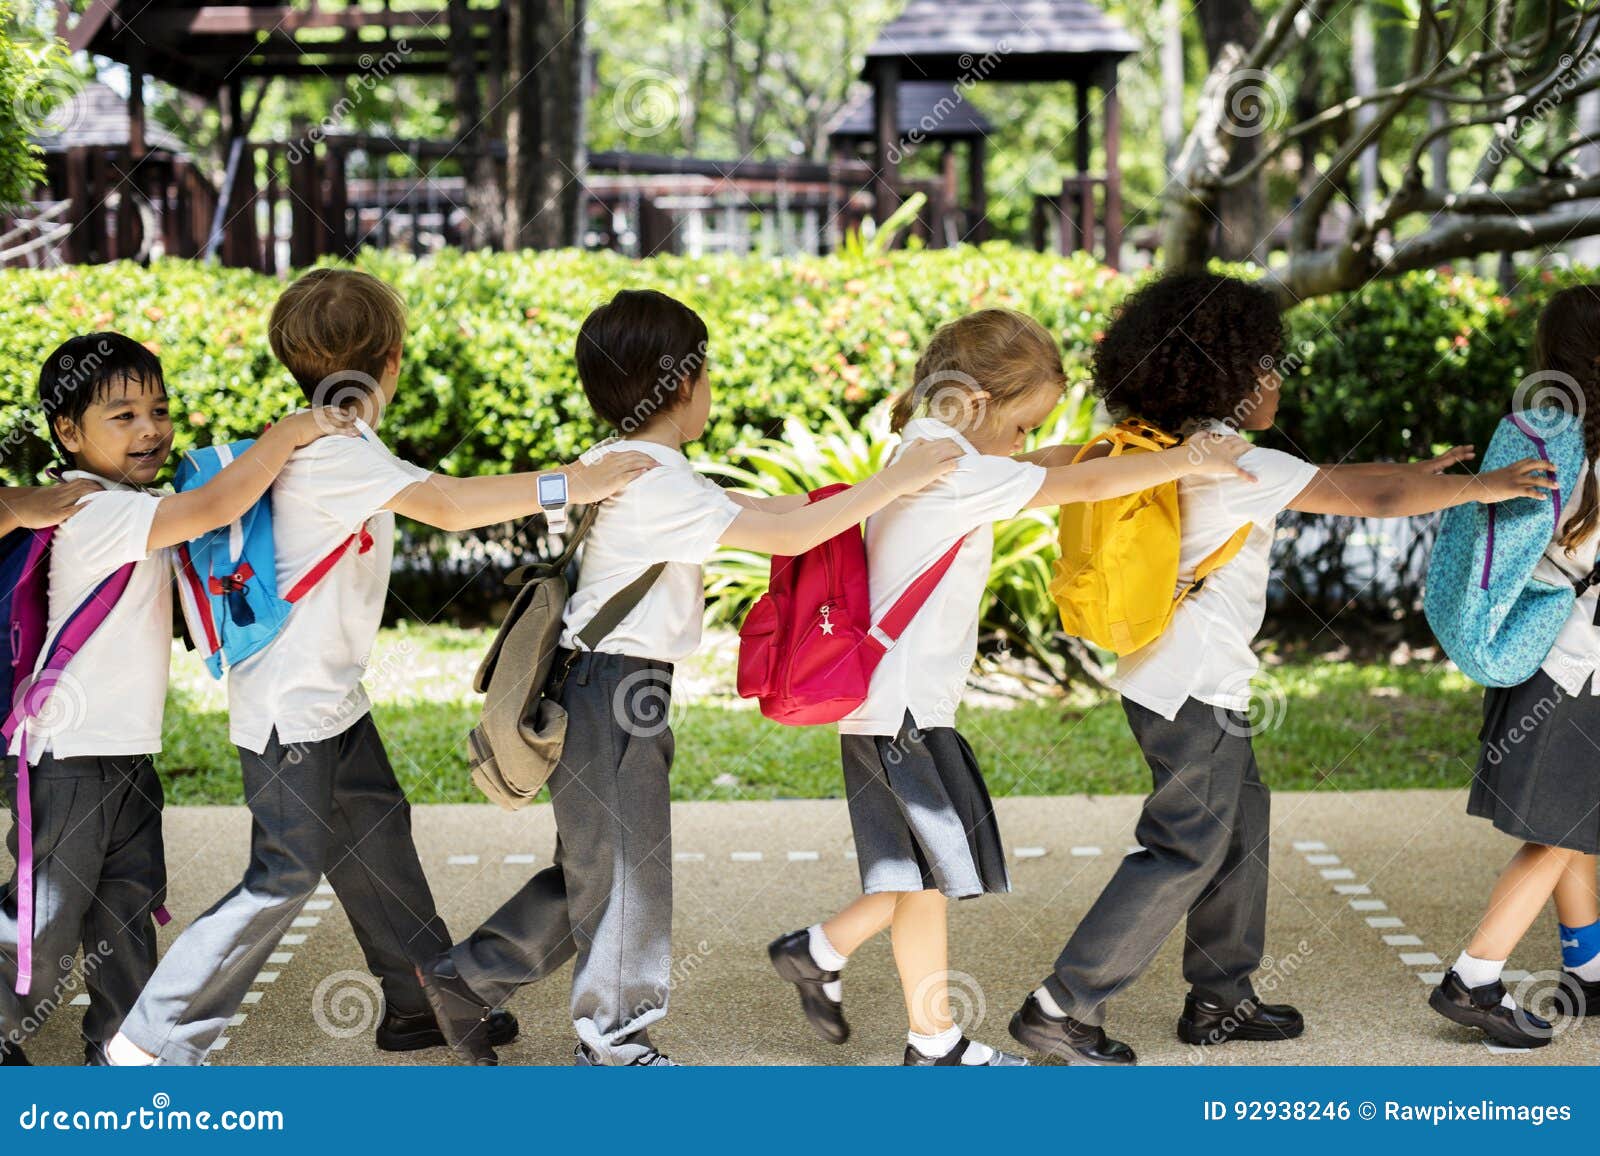 Kindergarten Students Walking Together In School Stock Photo Image Of